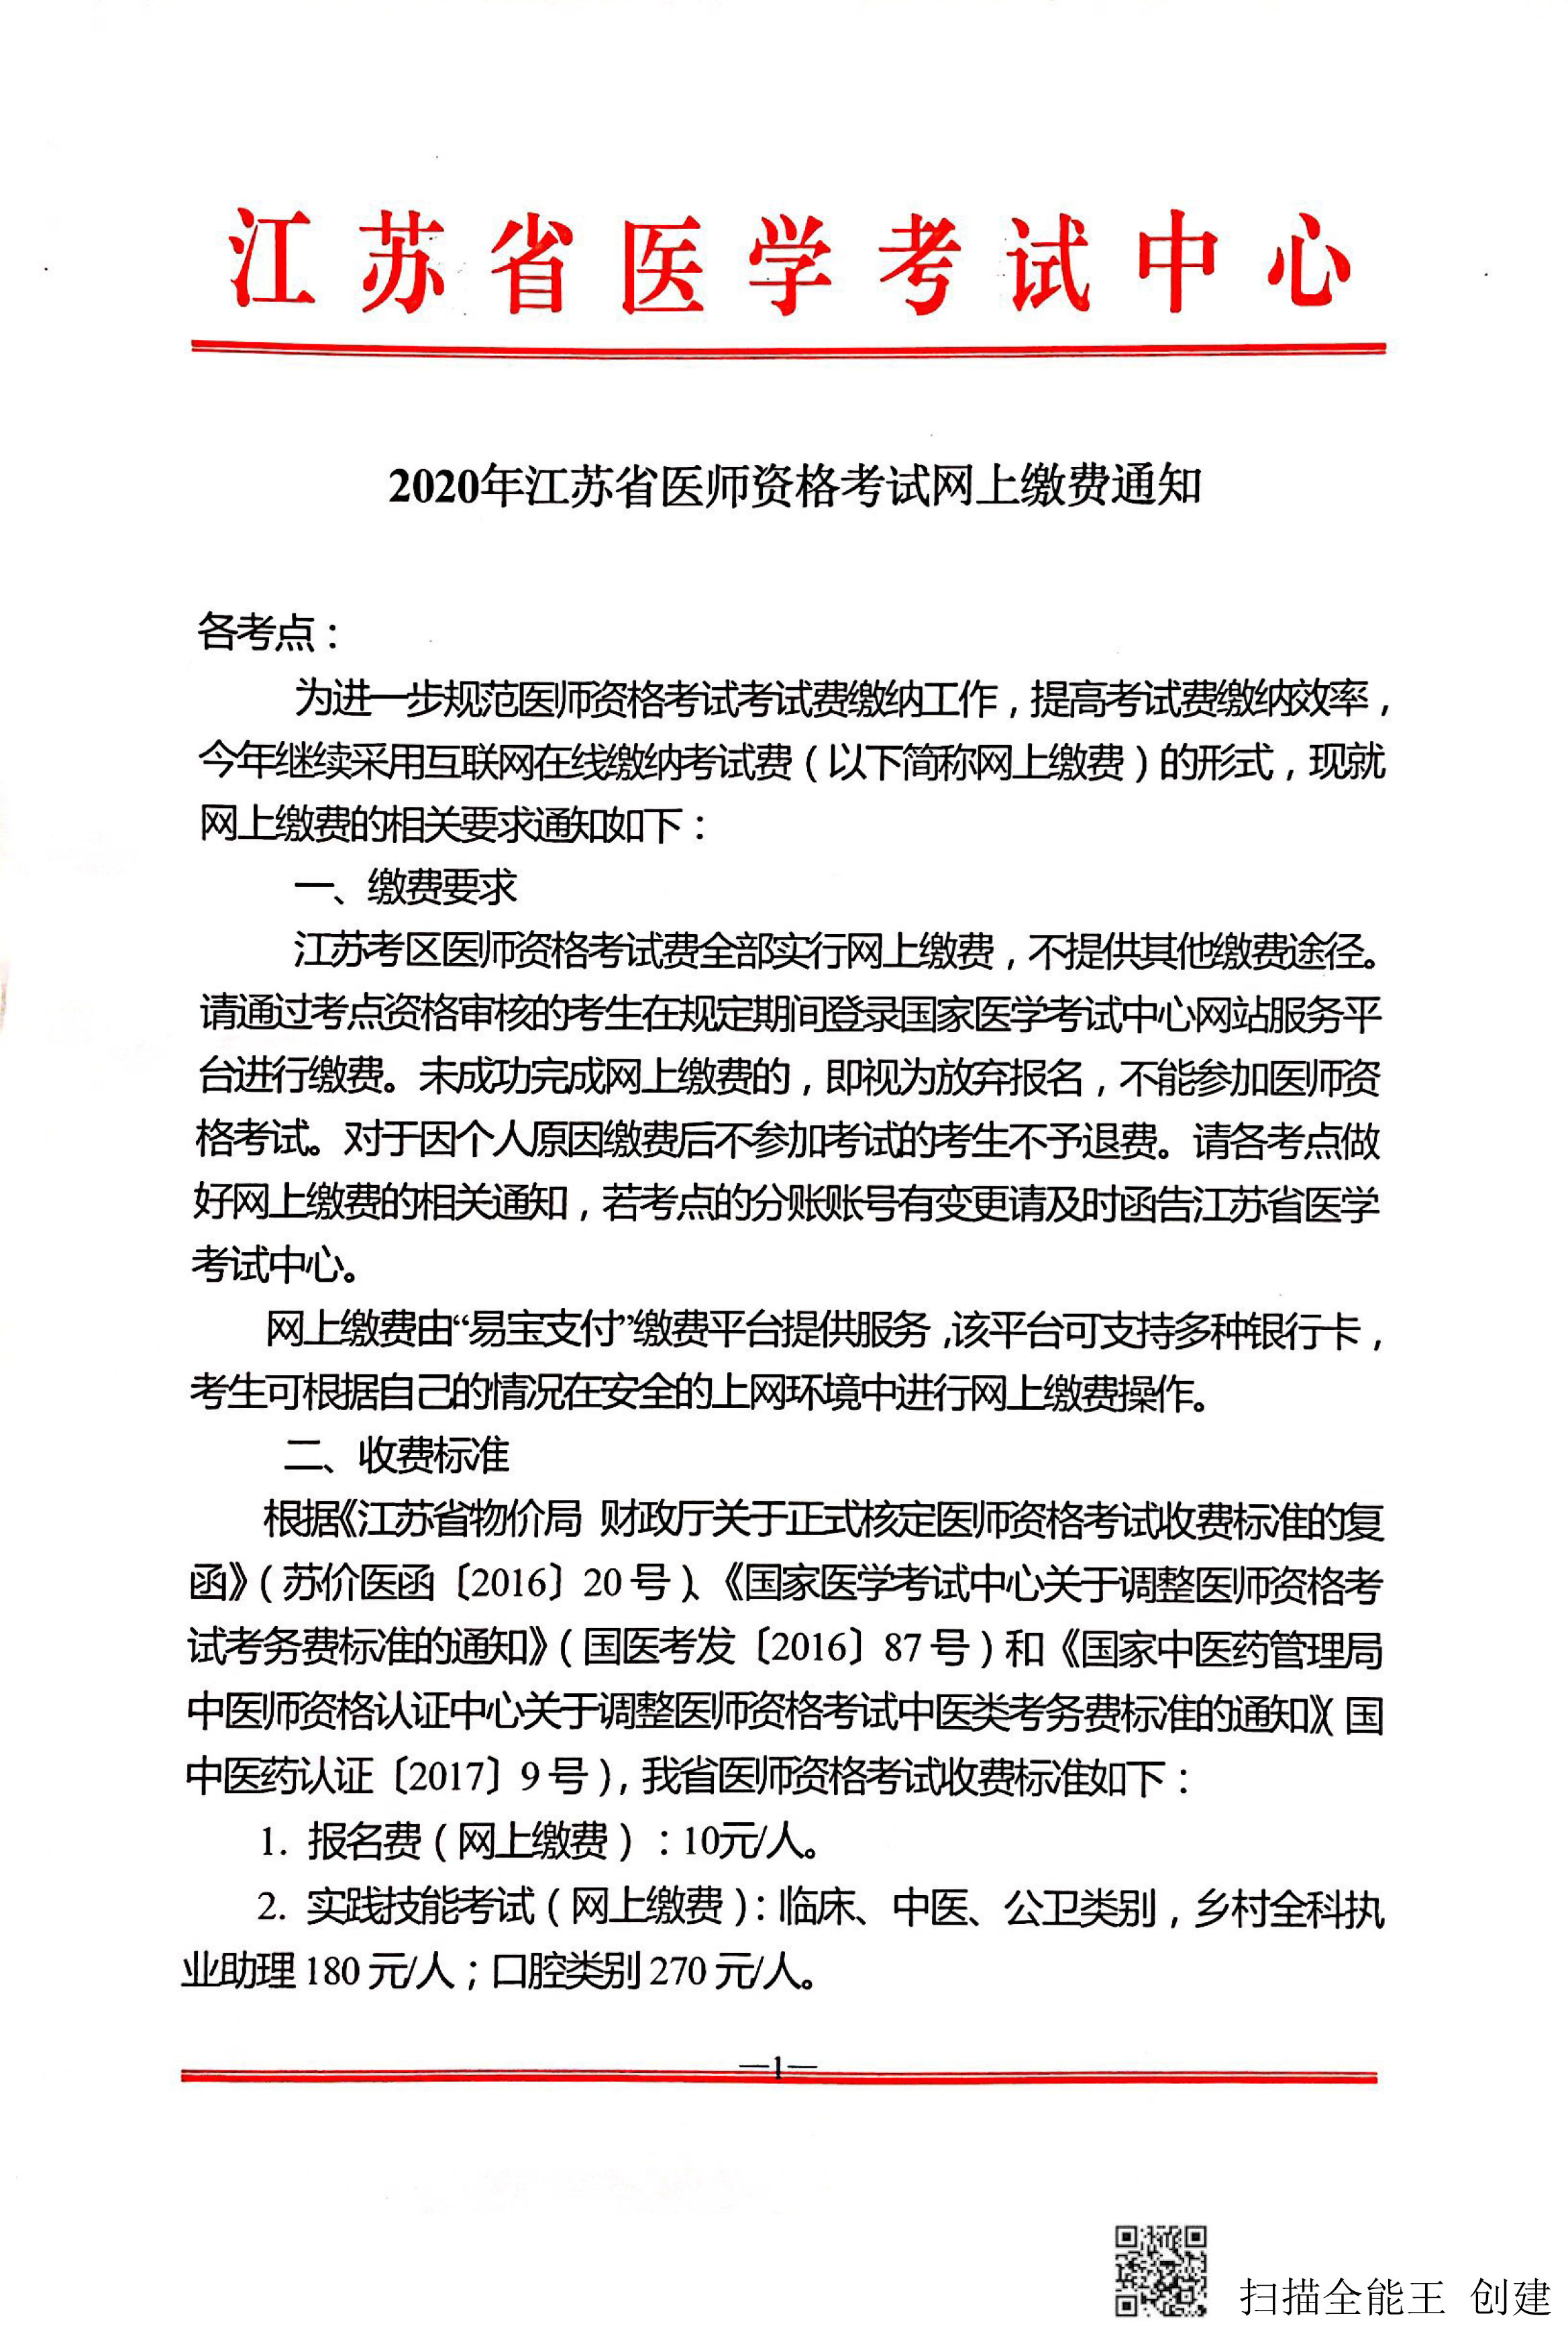 江苏考区2020年国家医师资格考试网上缴费通知